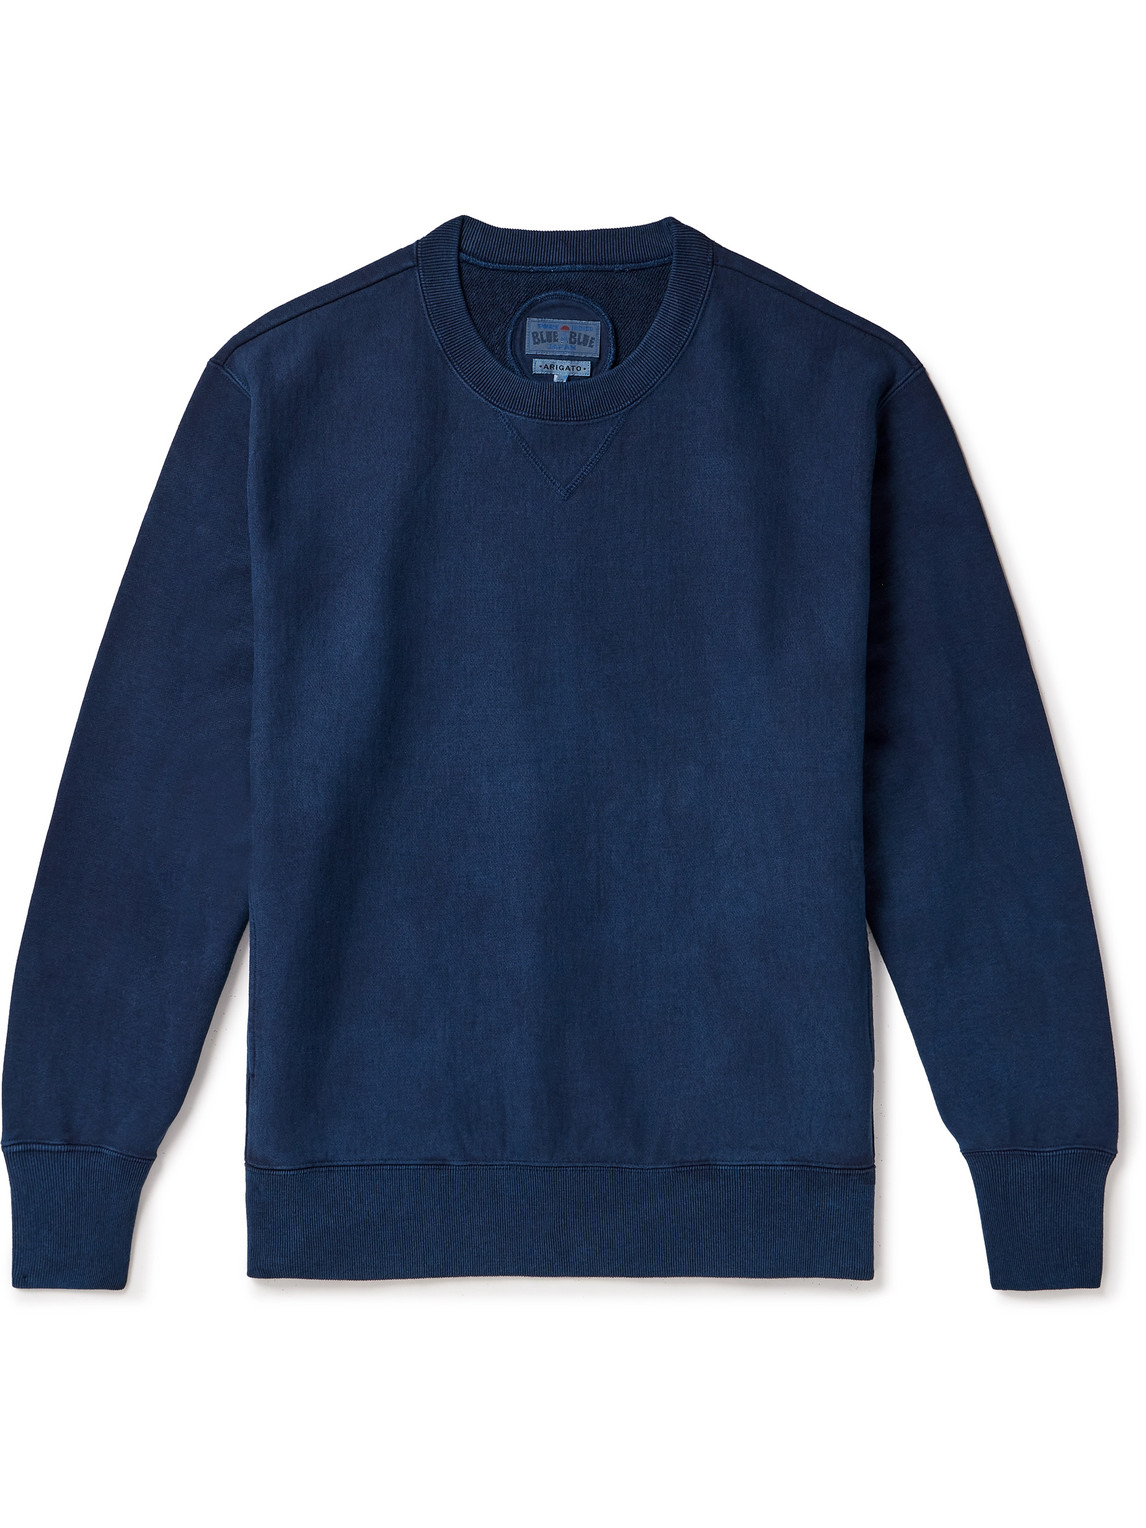 Blue Blue Japan - Indigo-Dyed Cotton-Jersey Sweatshirt - Men - Blue - M von Blue Blue Japan